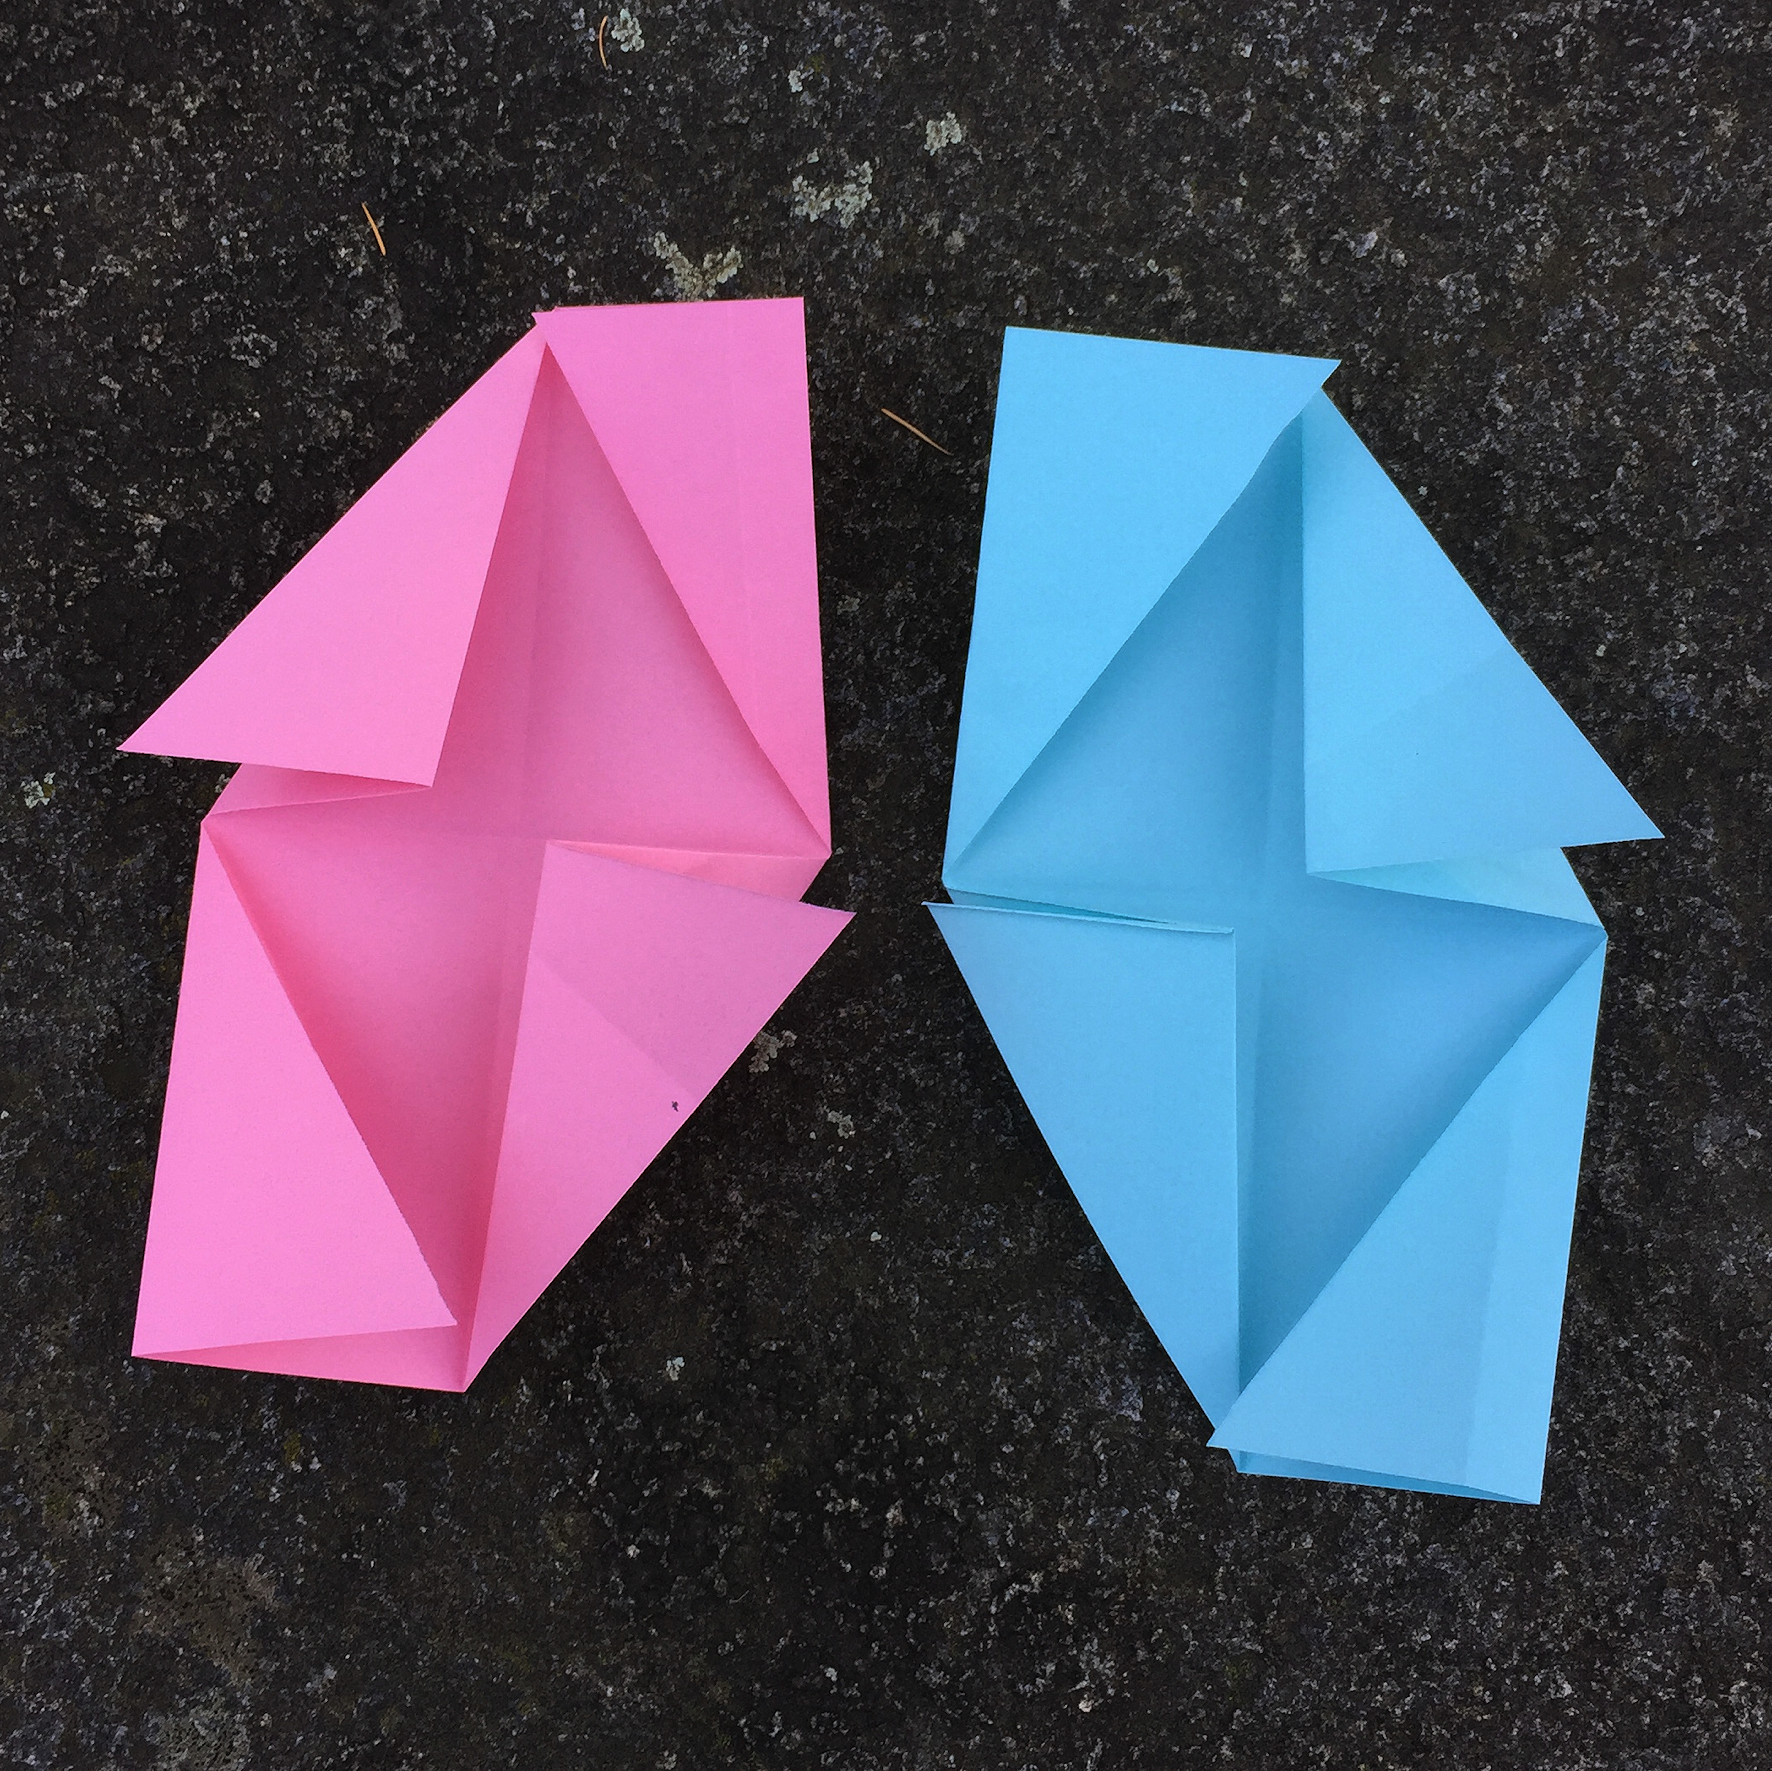 Ein Bild, das Papierkunst, Origamipapier, Bastelpapier, Origami enthält.

Automatisch generierte Beschreibung